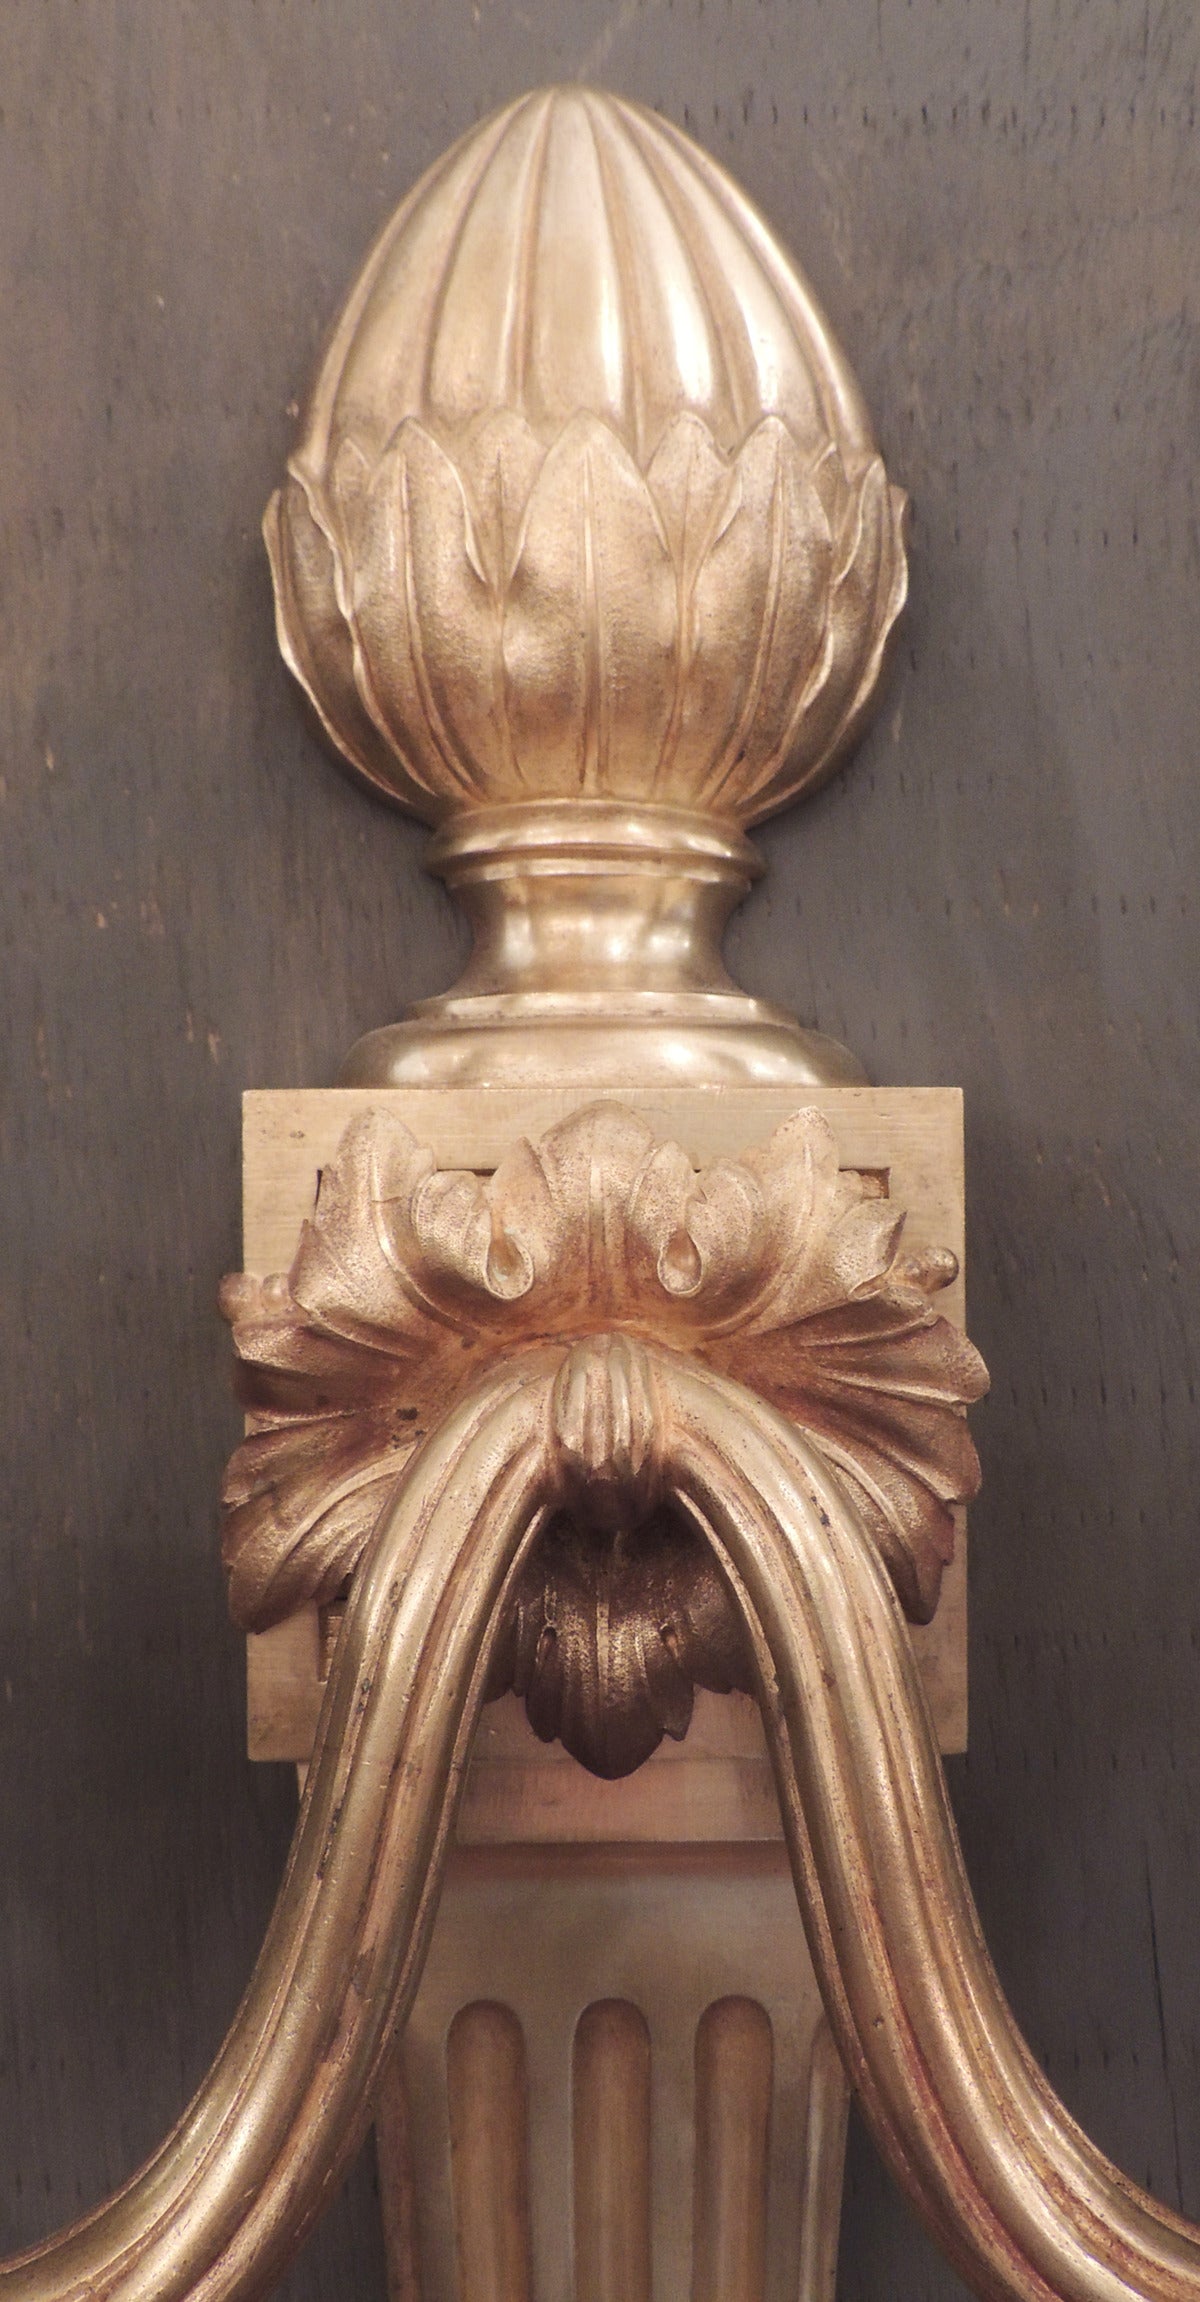 Dieses Paar sehr großer Bronze-Doré-Leuchter wurde im 19. Jahrhundert, um 1840, in Frankreich geschaffen. Dieses Paar verfügt über einen Eichelabschluss, der auf einer dorischen Säule mit Blumenmotiv sitzt. Der Boden ist mit Blattwerk und einer